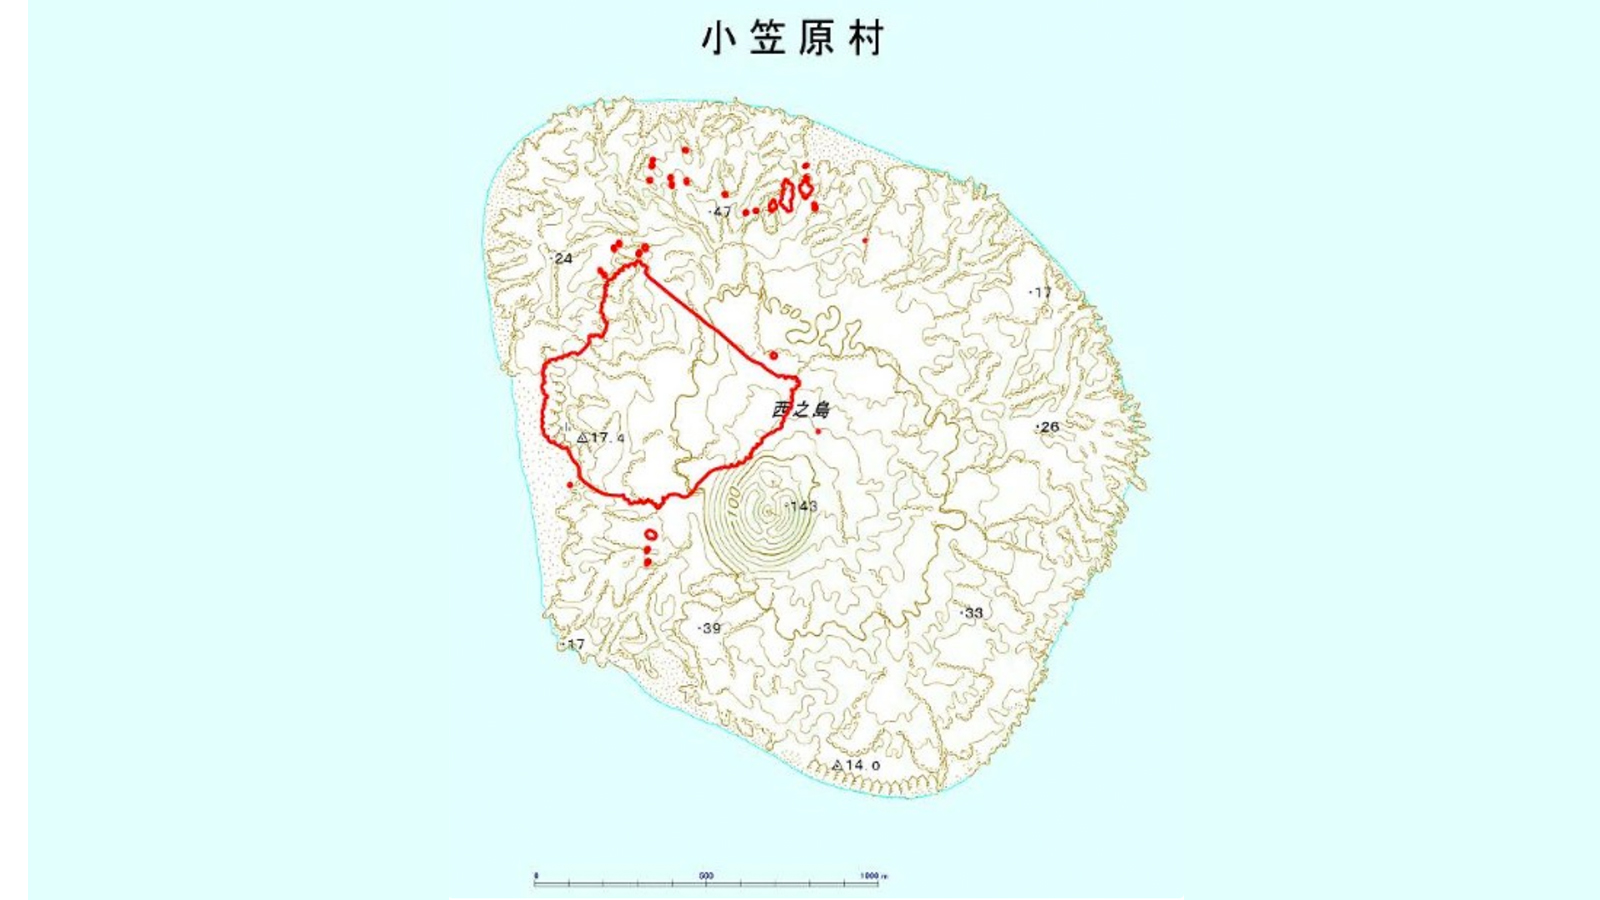 Die aktualisierte Karte von Nishinoshima. Die rote Linie markiert die alten Ausmasse.